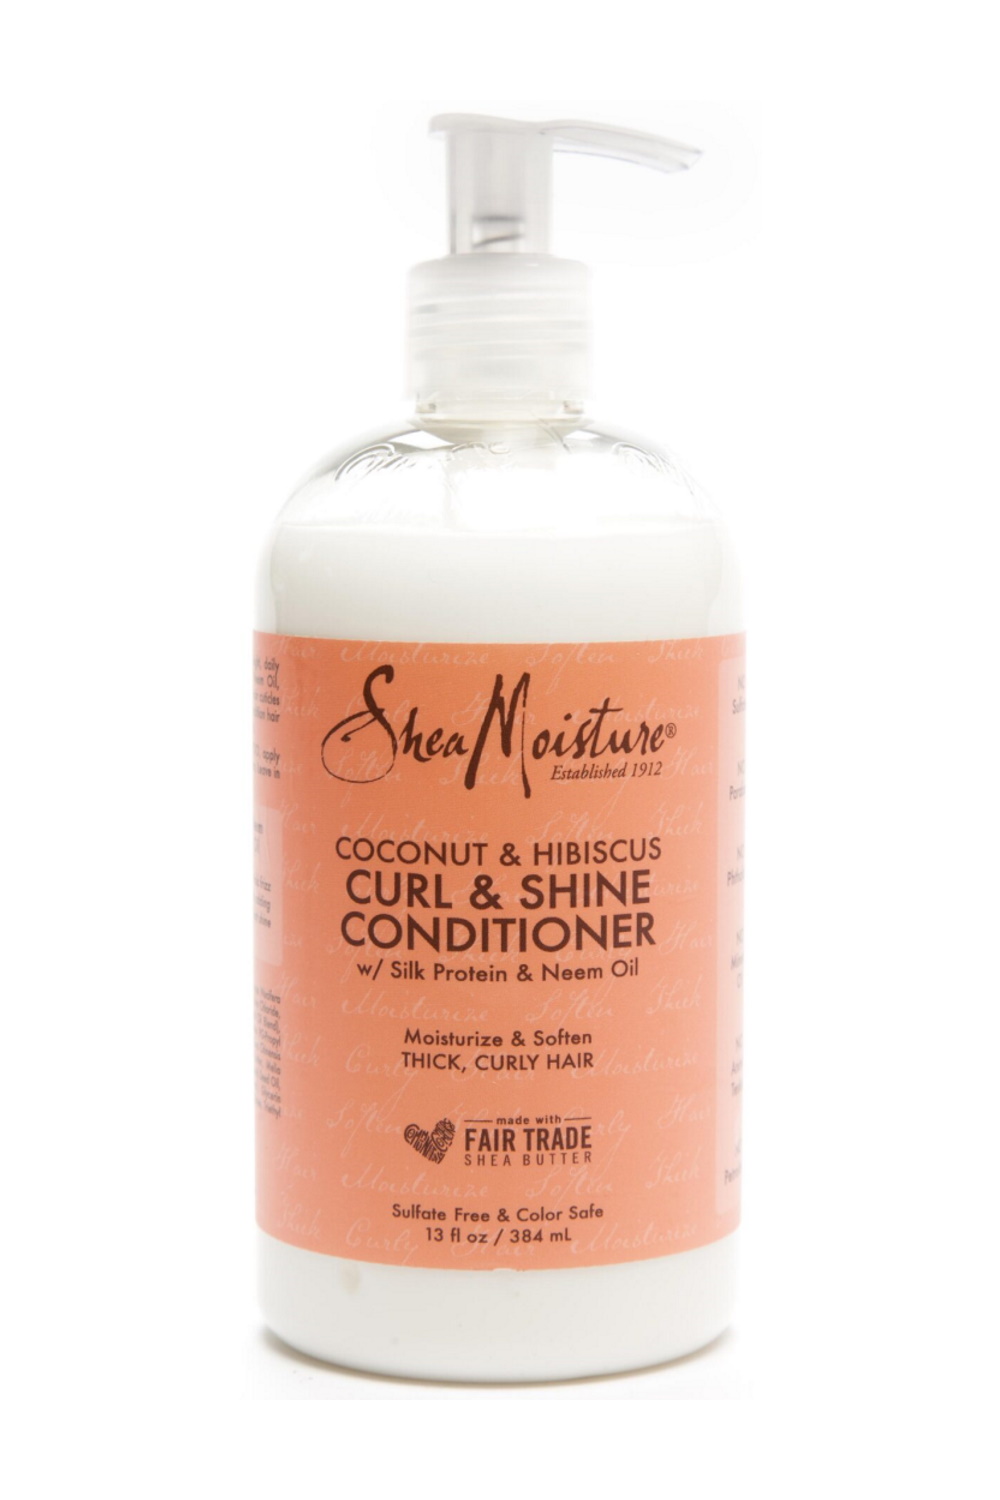 Shea Moisture Coconut & Hibiscus Curl & Shine Conditioner – Stylishcare